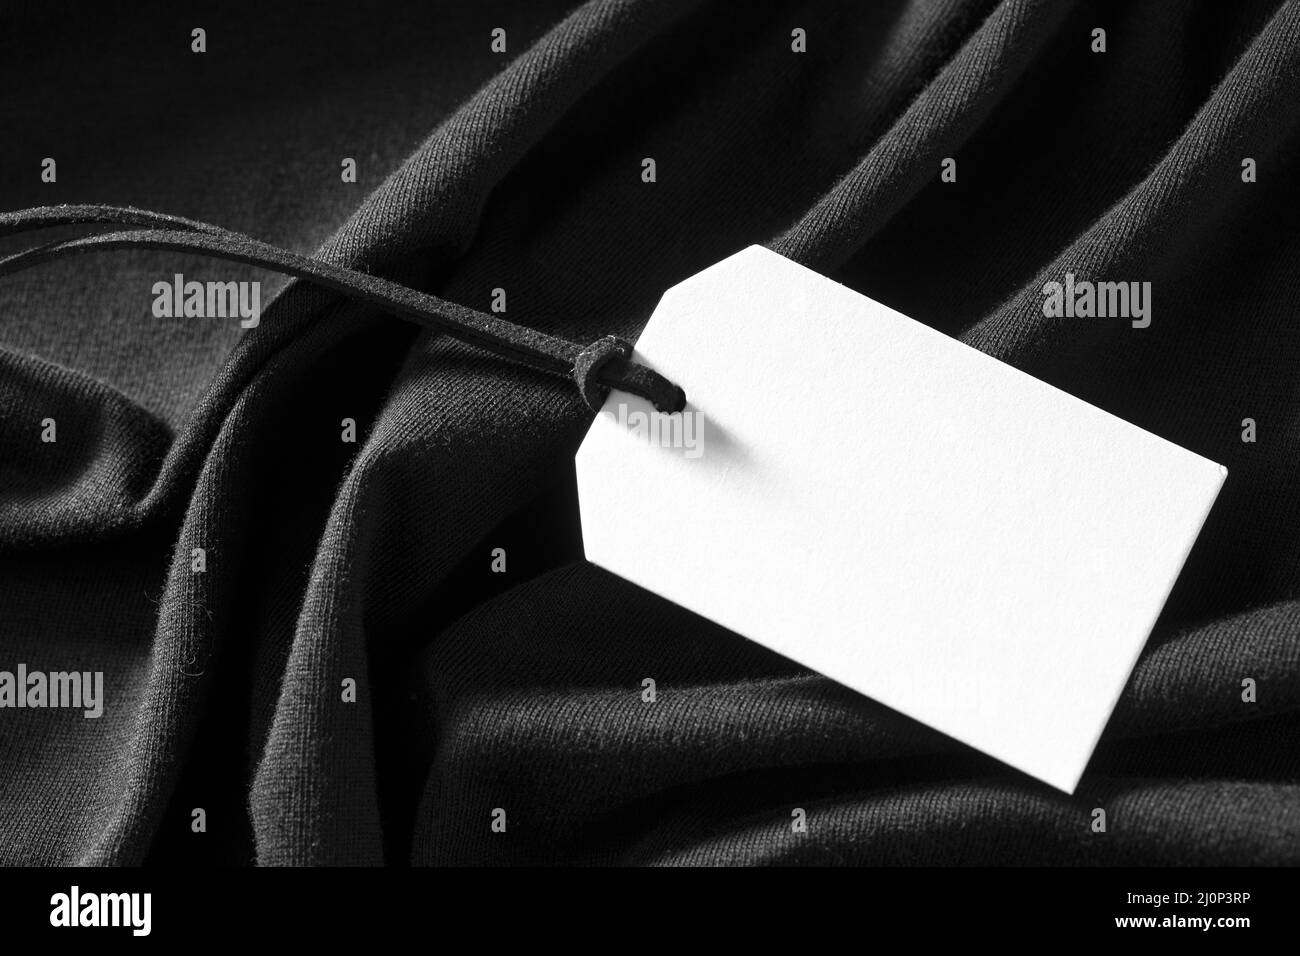 Étiquette blanche vide sur tissu noir. Haute qualité et résolution magnifique concept de photo Banque D'Images